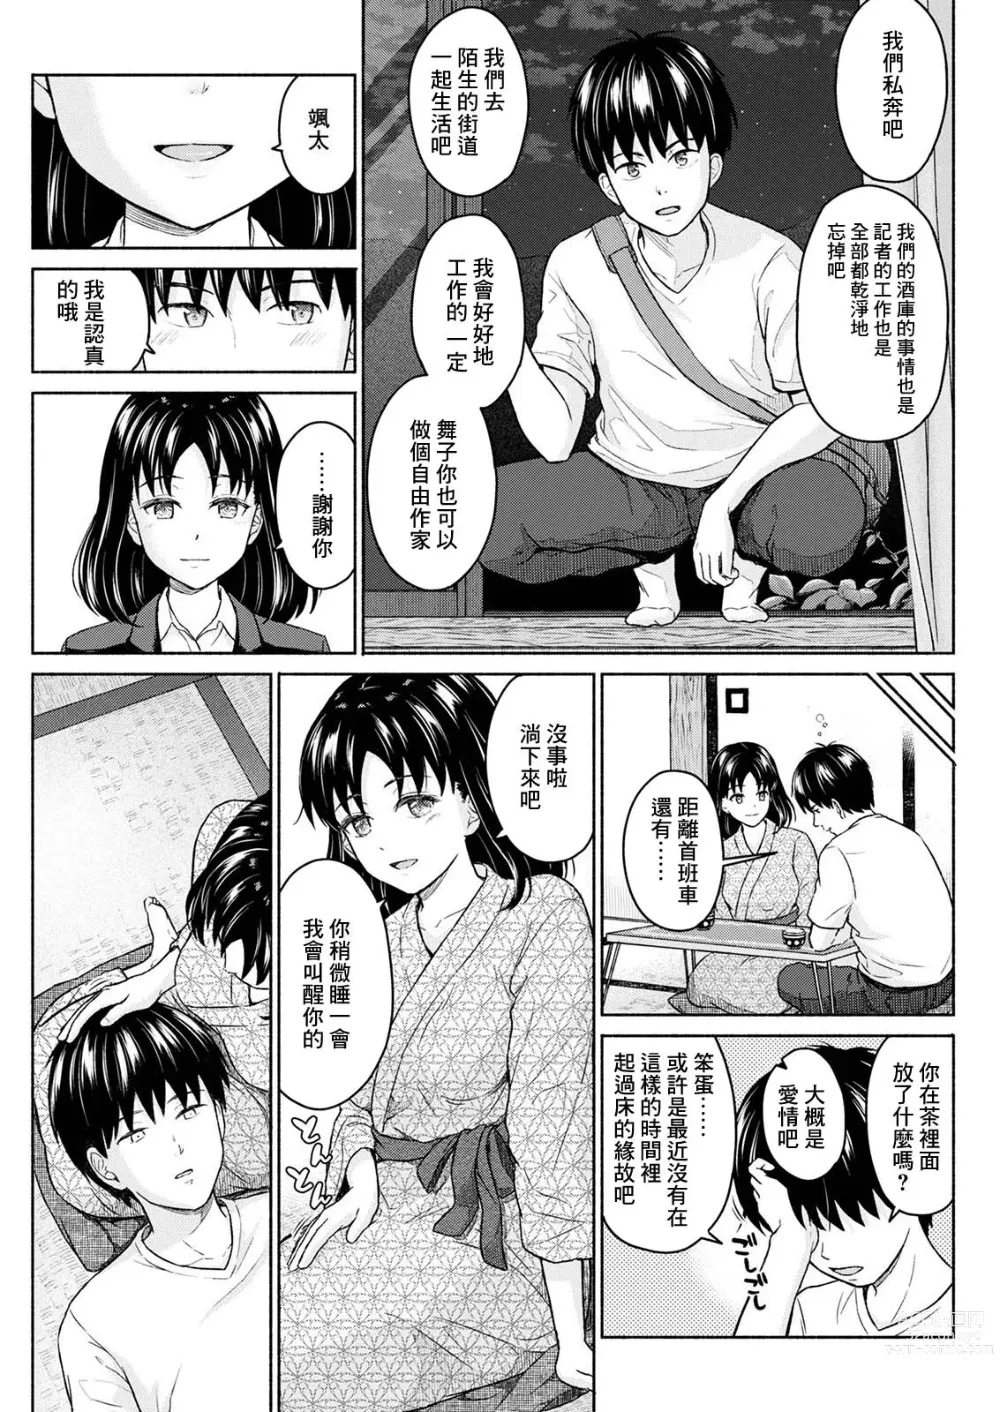 Page 19 of manga Marude Rokugatsu no Kohan o Fuku Kaze no you ni Kouhen